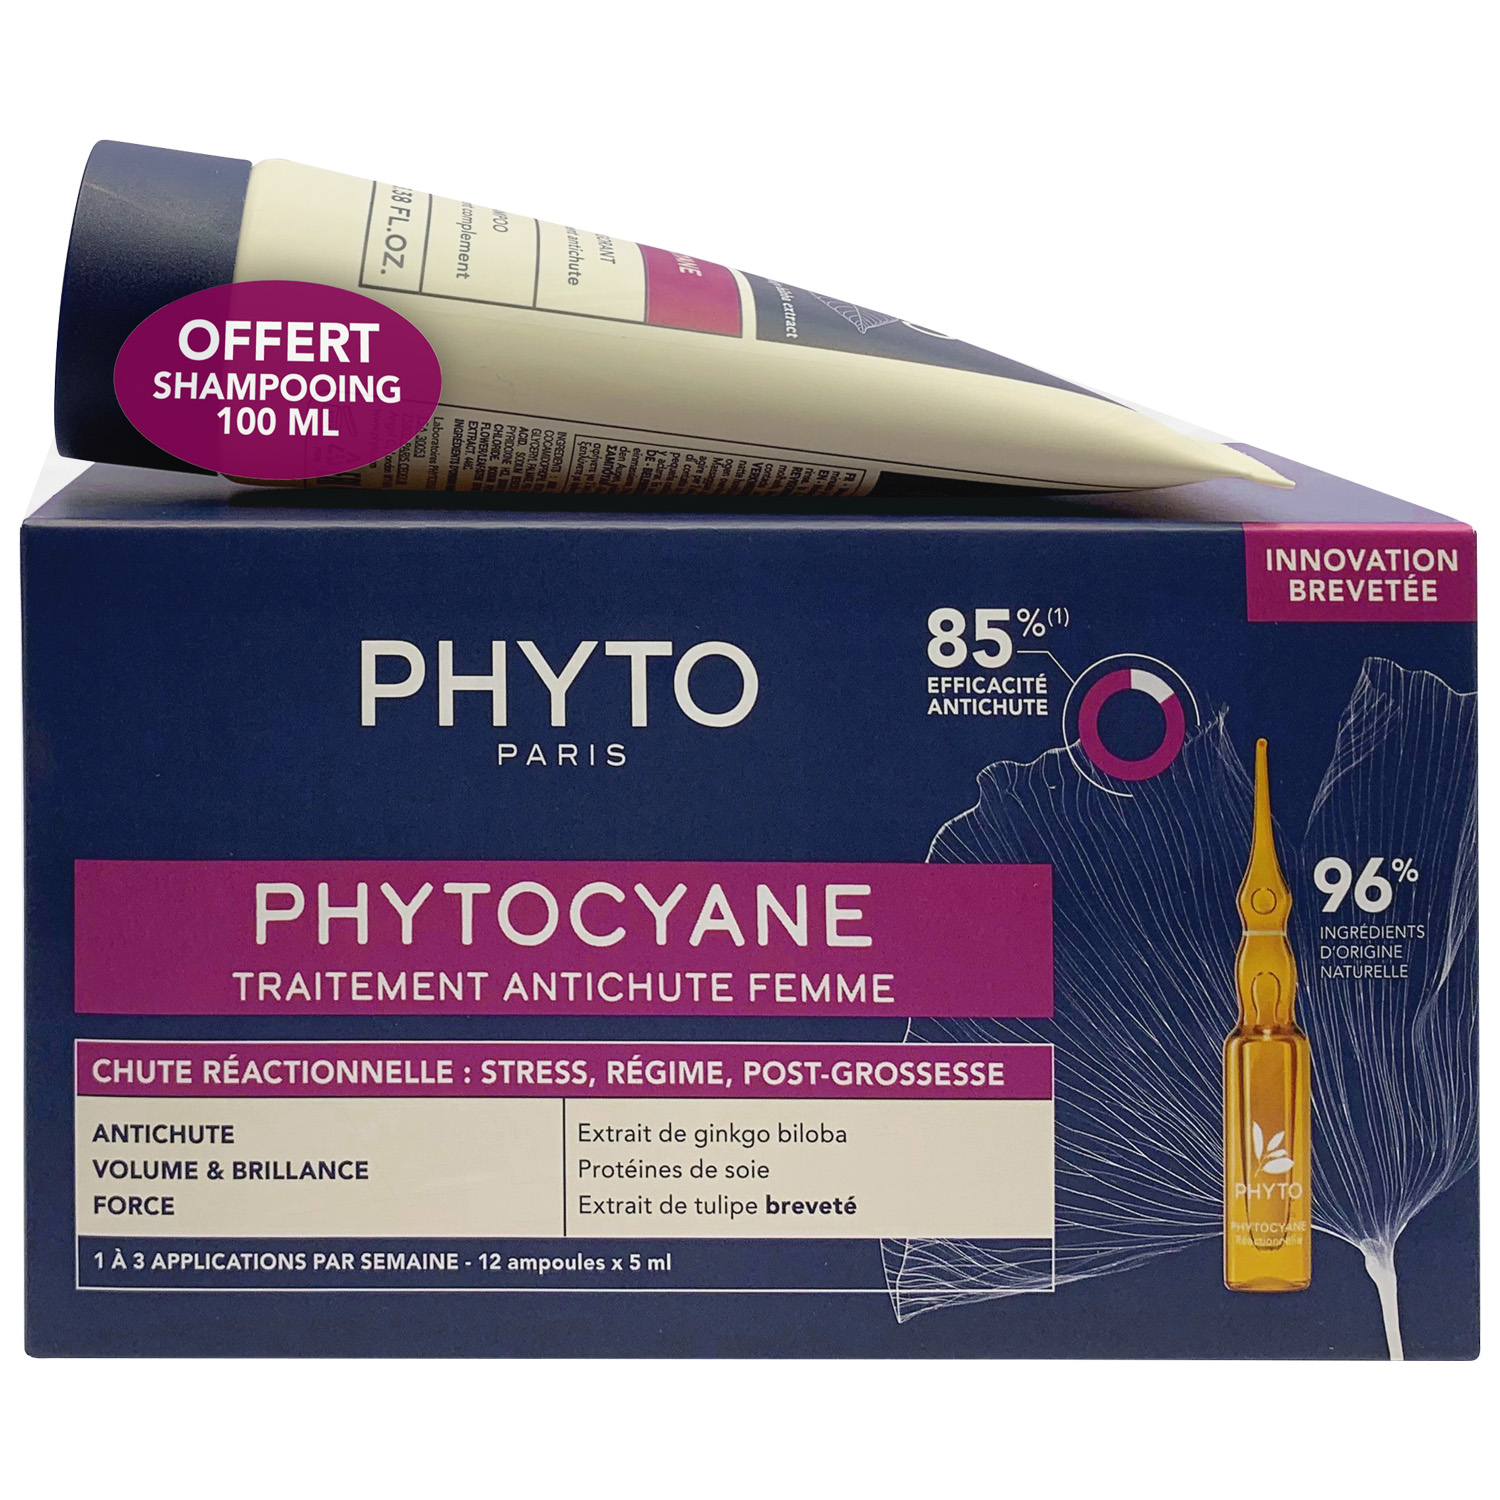 Phyto Набор для женщин: сыворотка от выпадения волос 12x5 мл + укрепляющий шампунь 100 мл (Phyto, Phytocyane) сыворотка phyto против выпадения волос для женщин 12 ампул х 5 мл